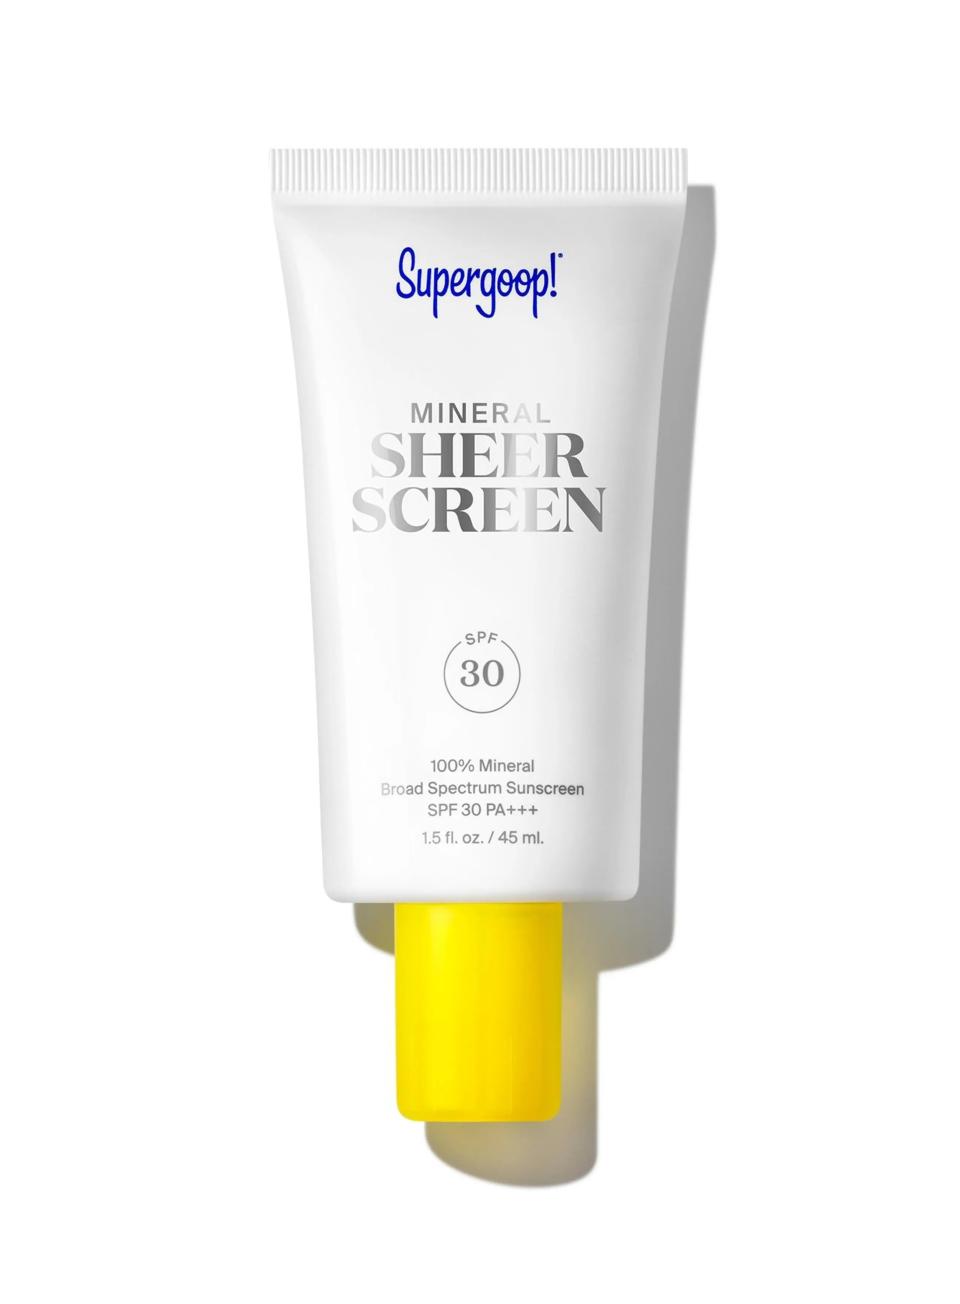 Supergoop! Mineral Sheerscreen SPF 30, best mineral sunscreen